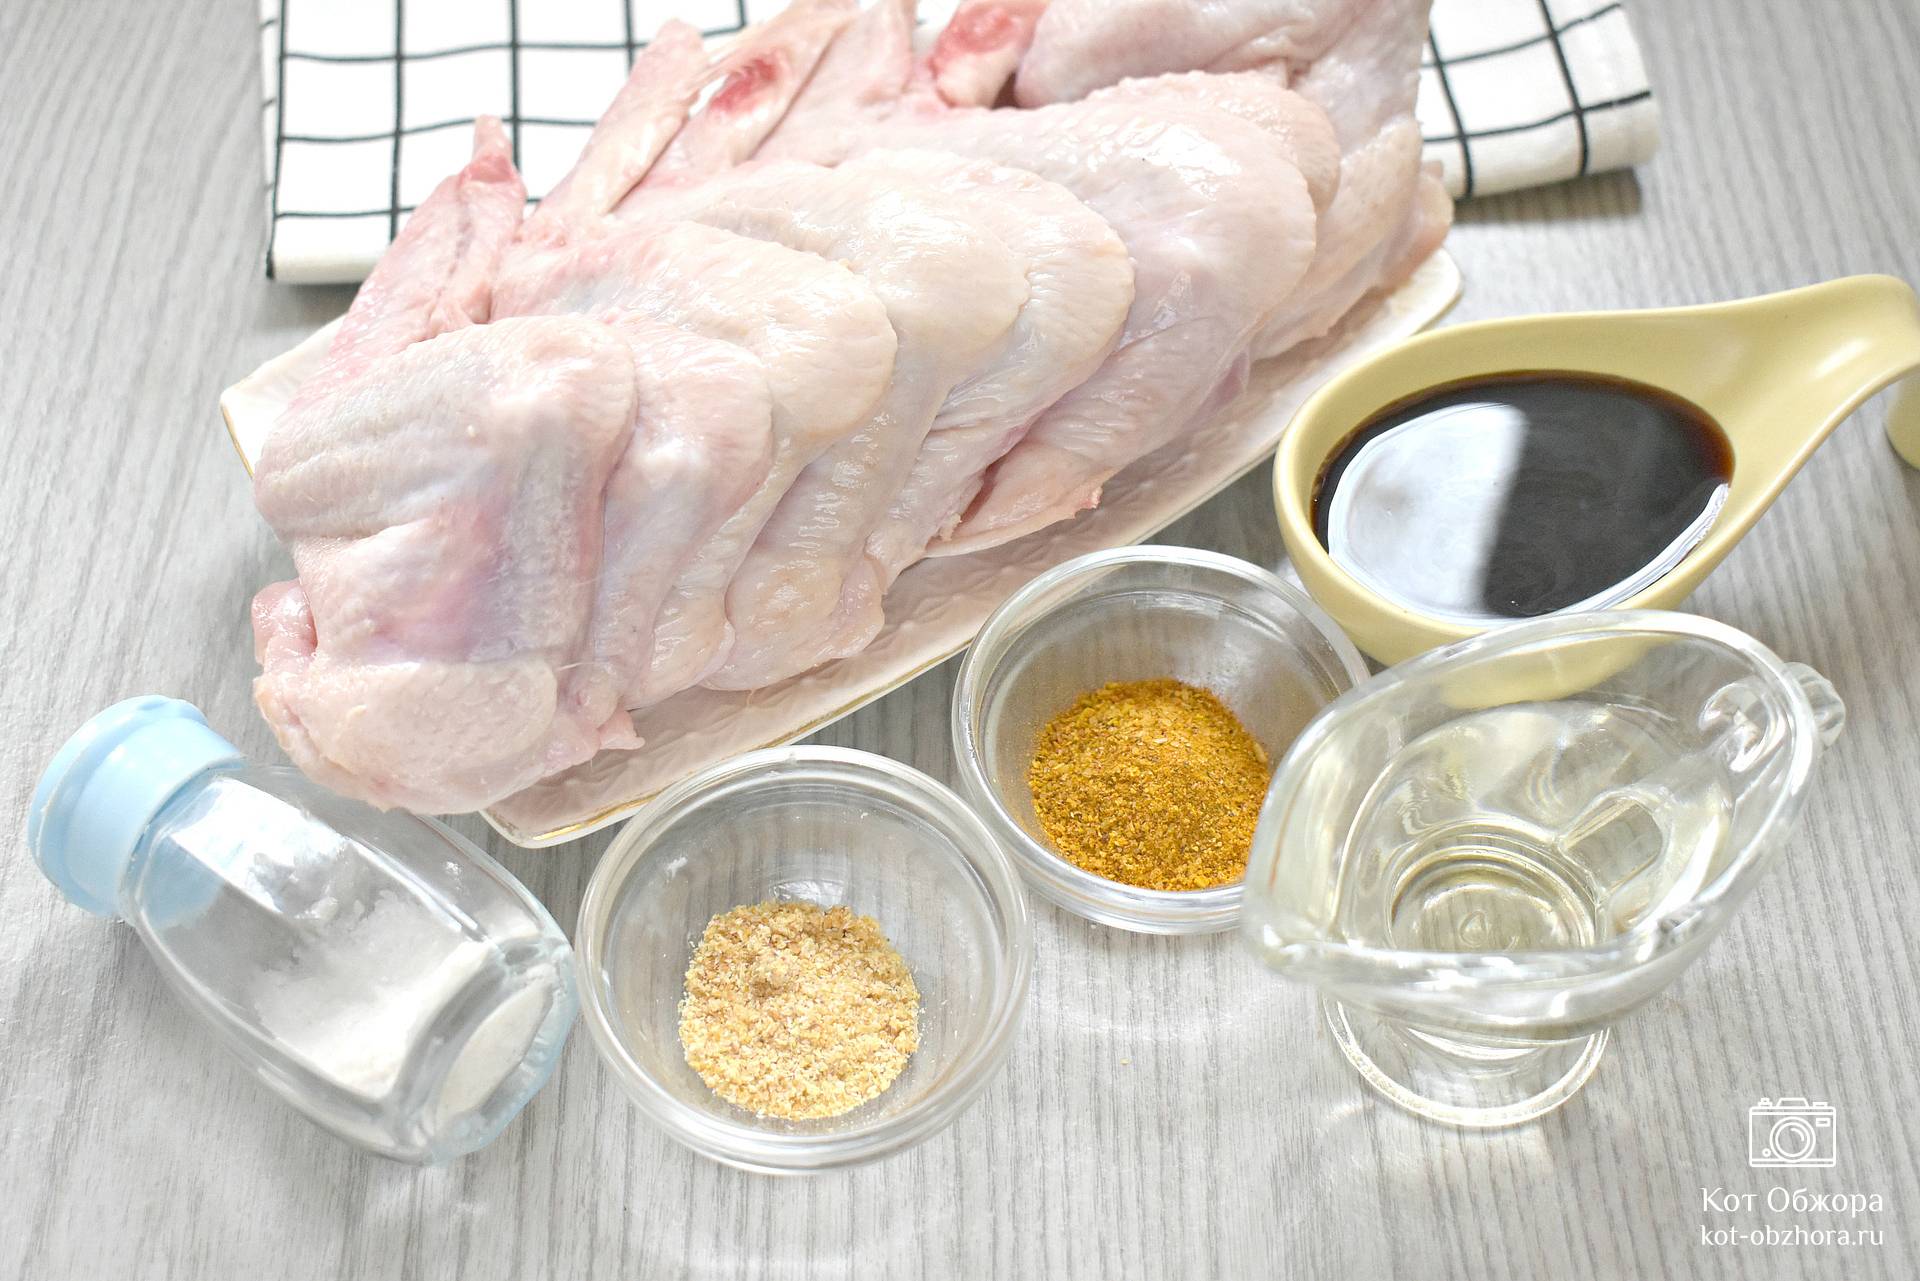 Куриные крылышки в медово-соевом соусе, пошаговый рецепт на ккал, фото, ингредиенты - Юлия